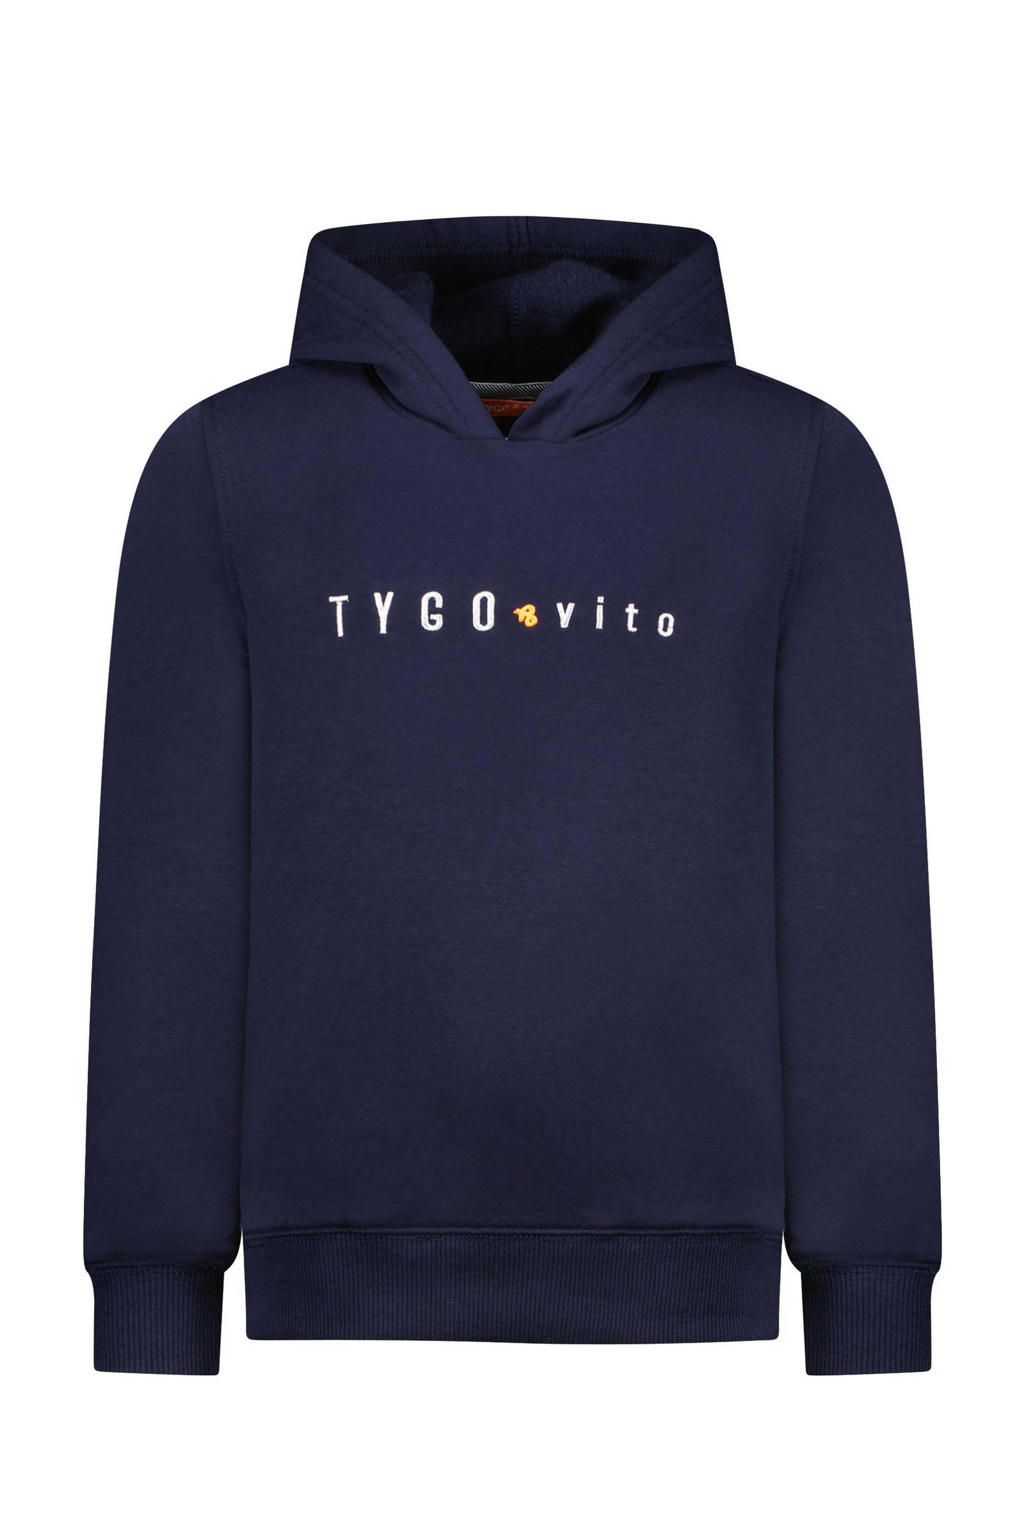 TYGO & vito hoodie donkerblauw